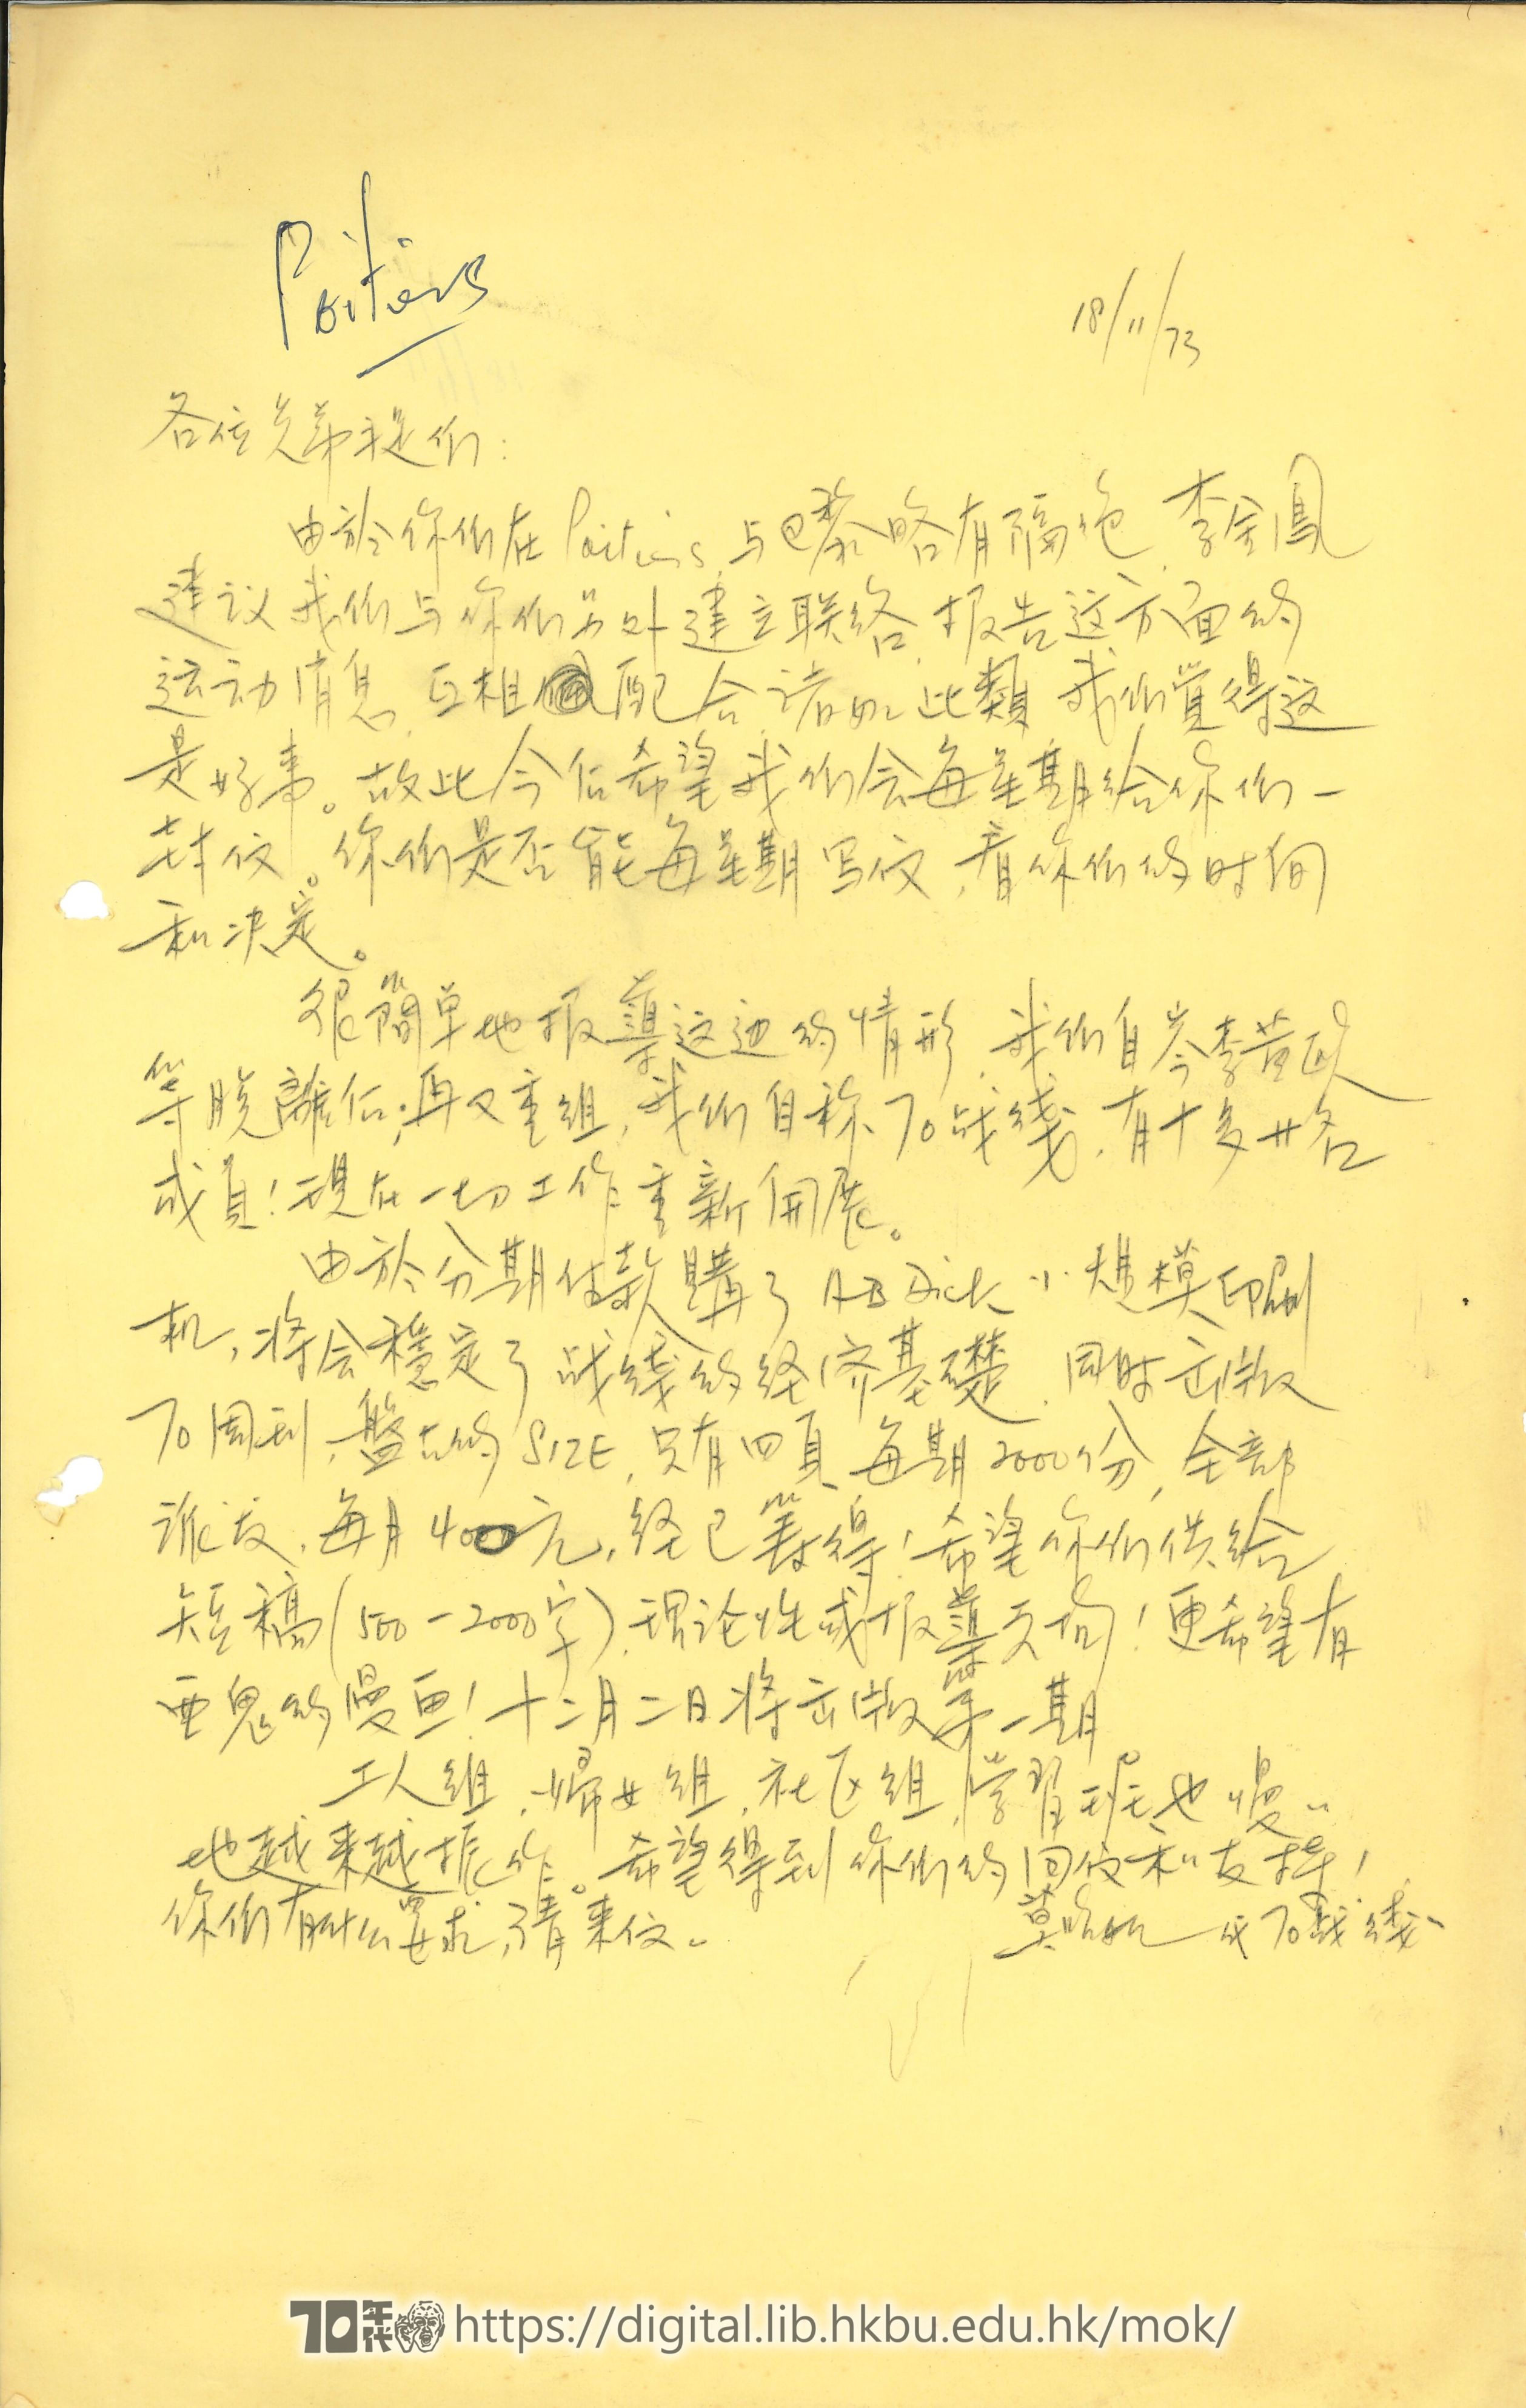   Letter from Mok Chiu Yu to friends MOK, Chiu Yu 